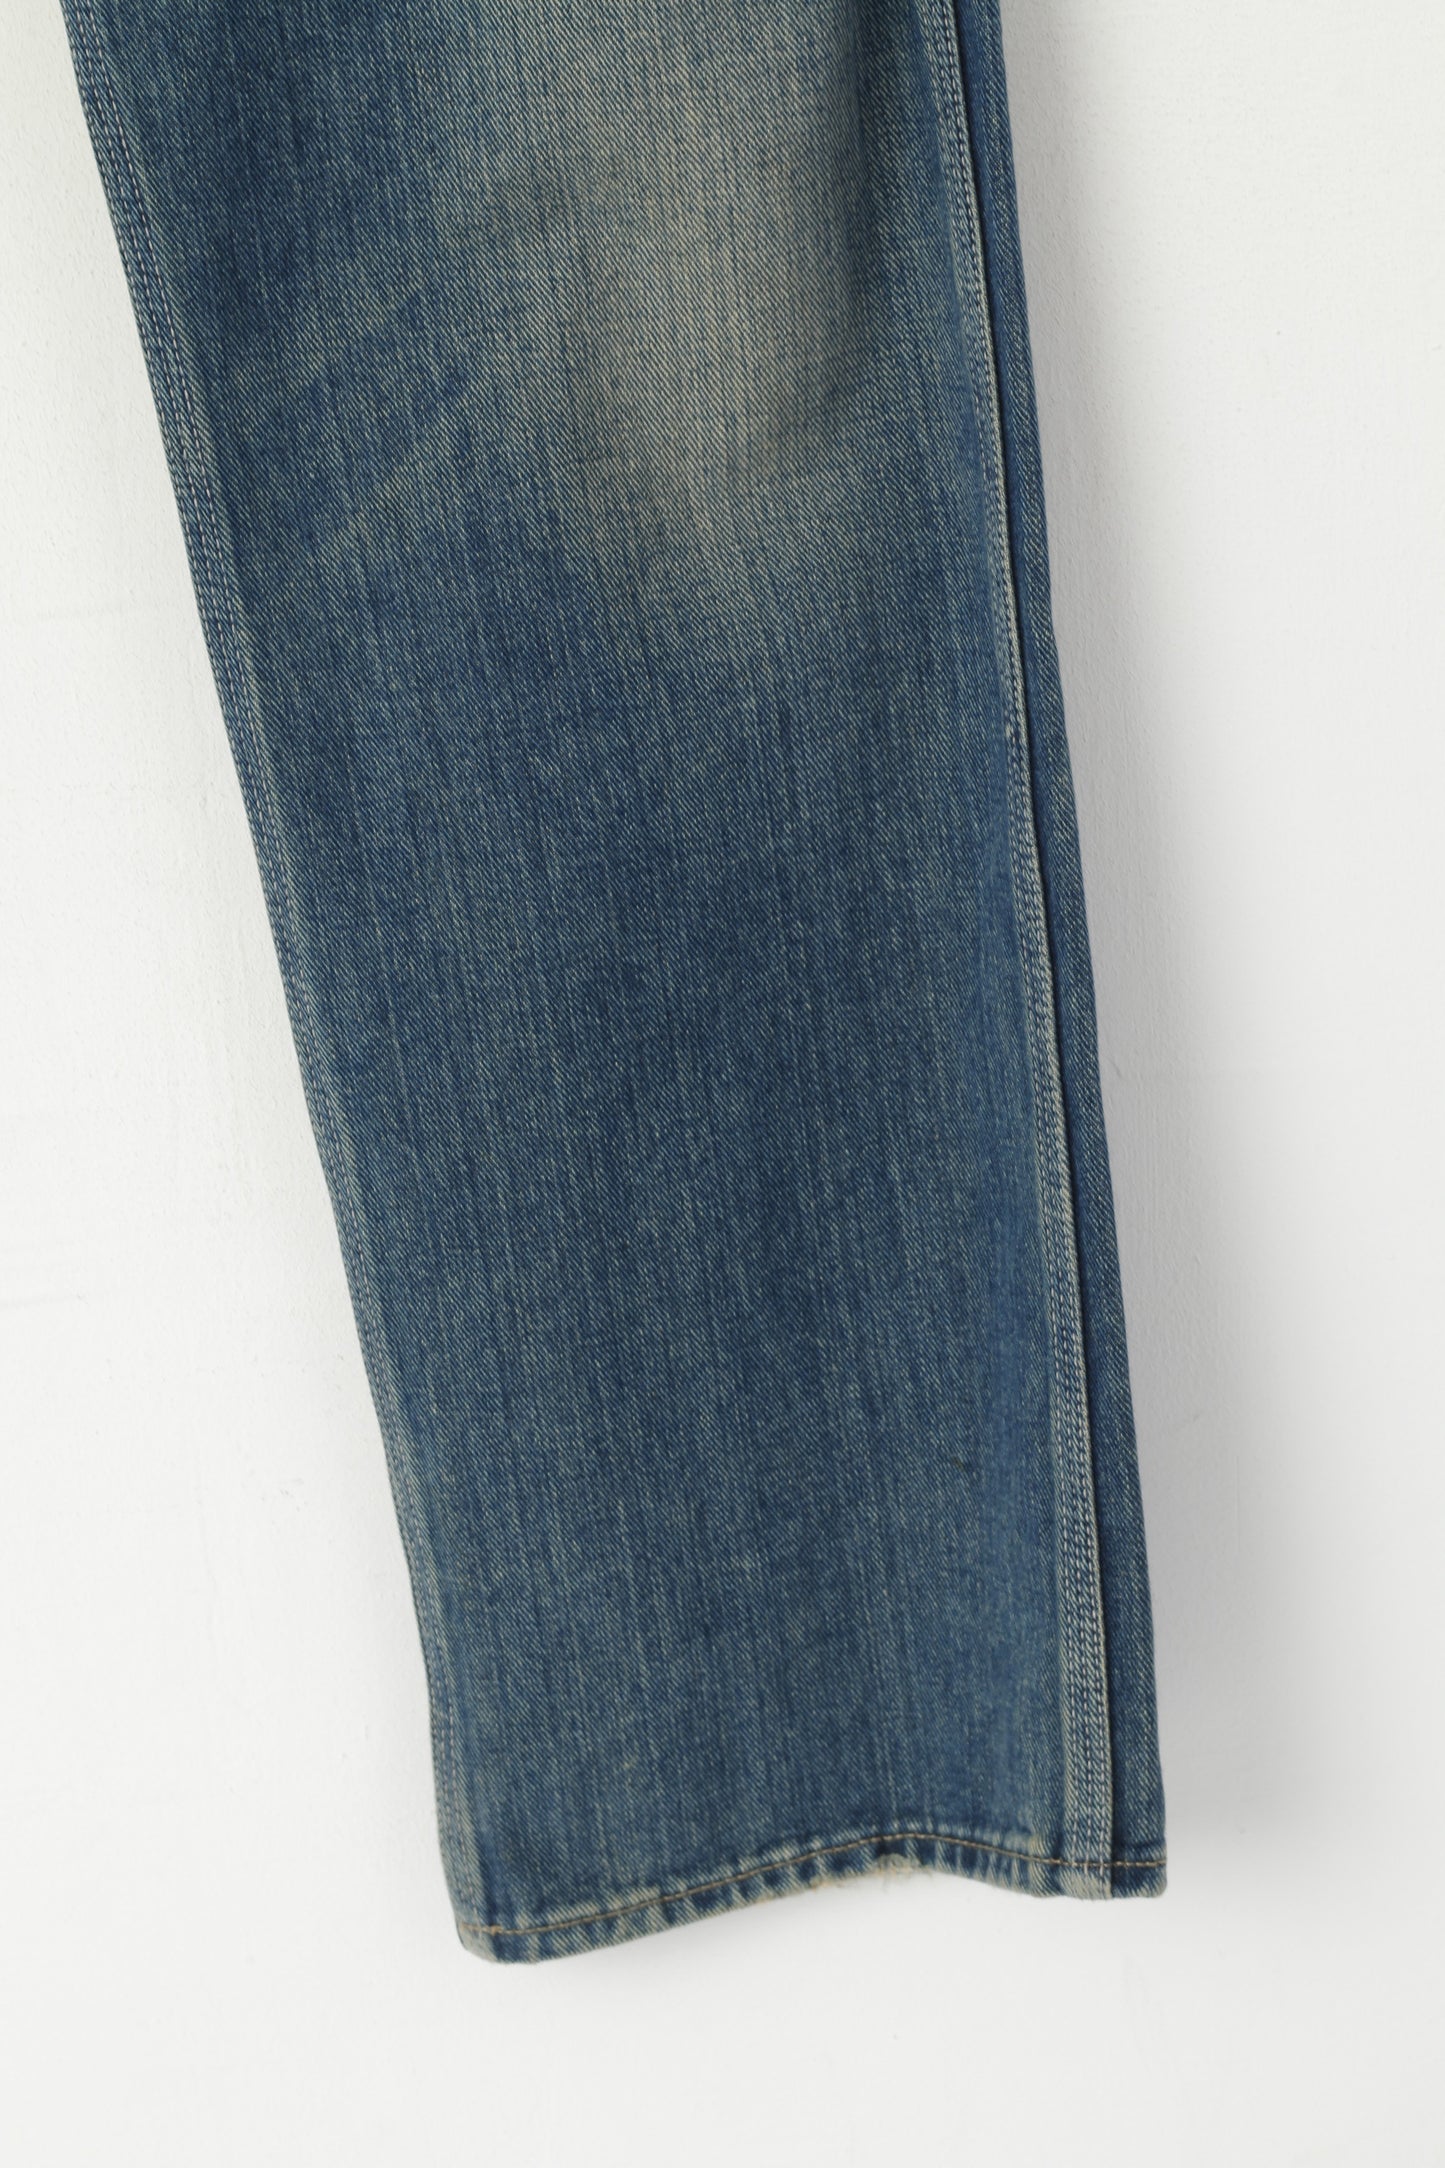 Paul Smith Jeans Homme 34 Pantalon Bleu Marine Denim Coton Jambe Droite Pantalon Classique